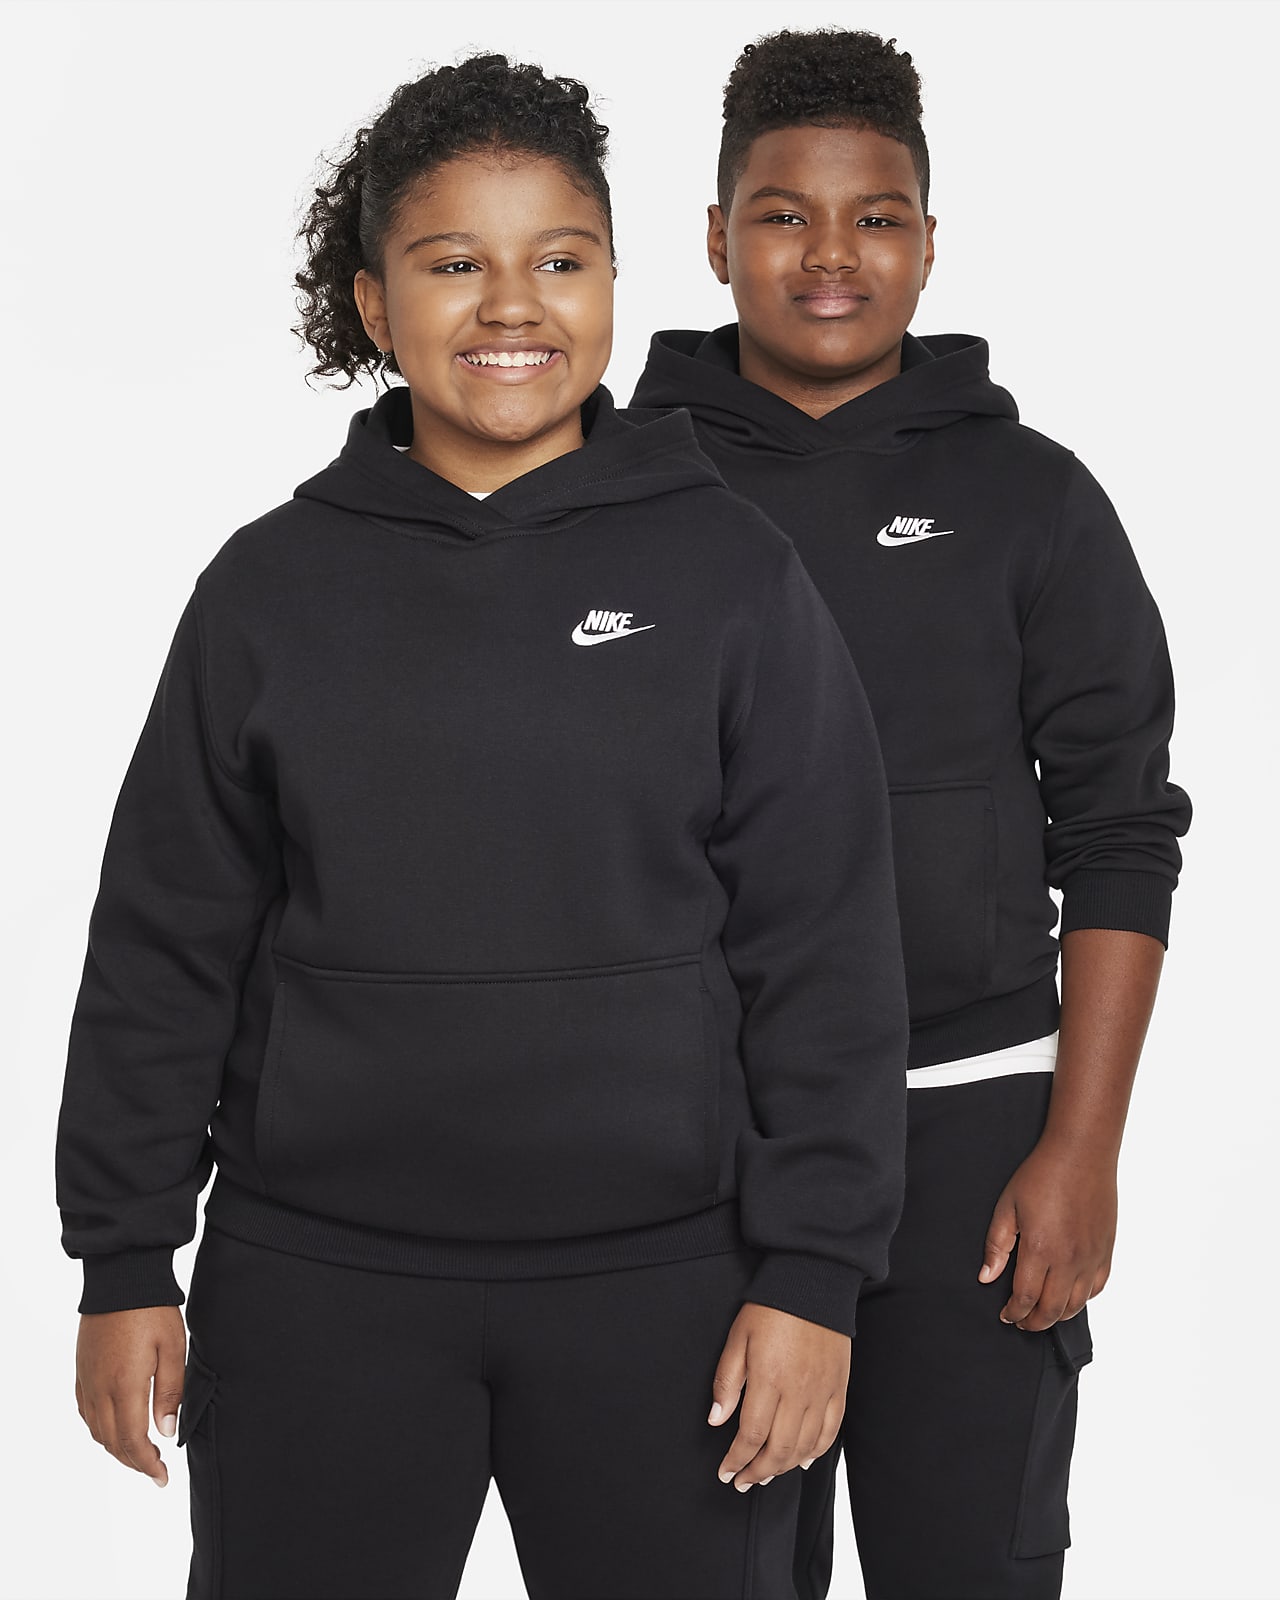 Flísová mikina Nike Sportswear Club pro větší děti, s kapucí (rozšířená velikost)